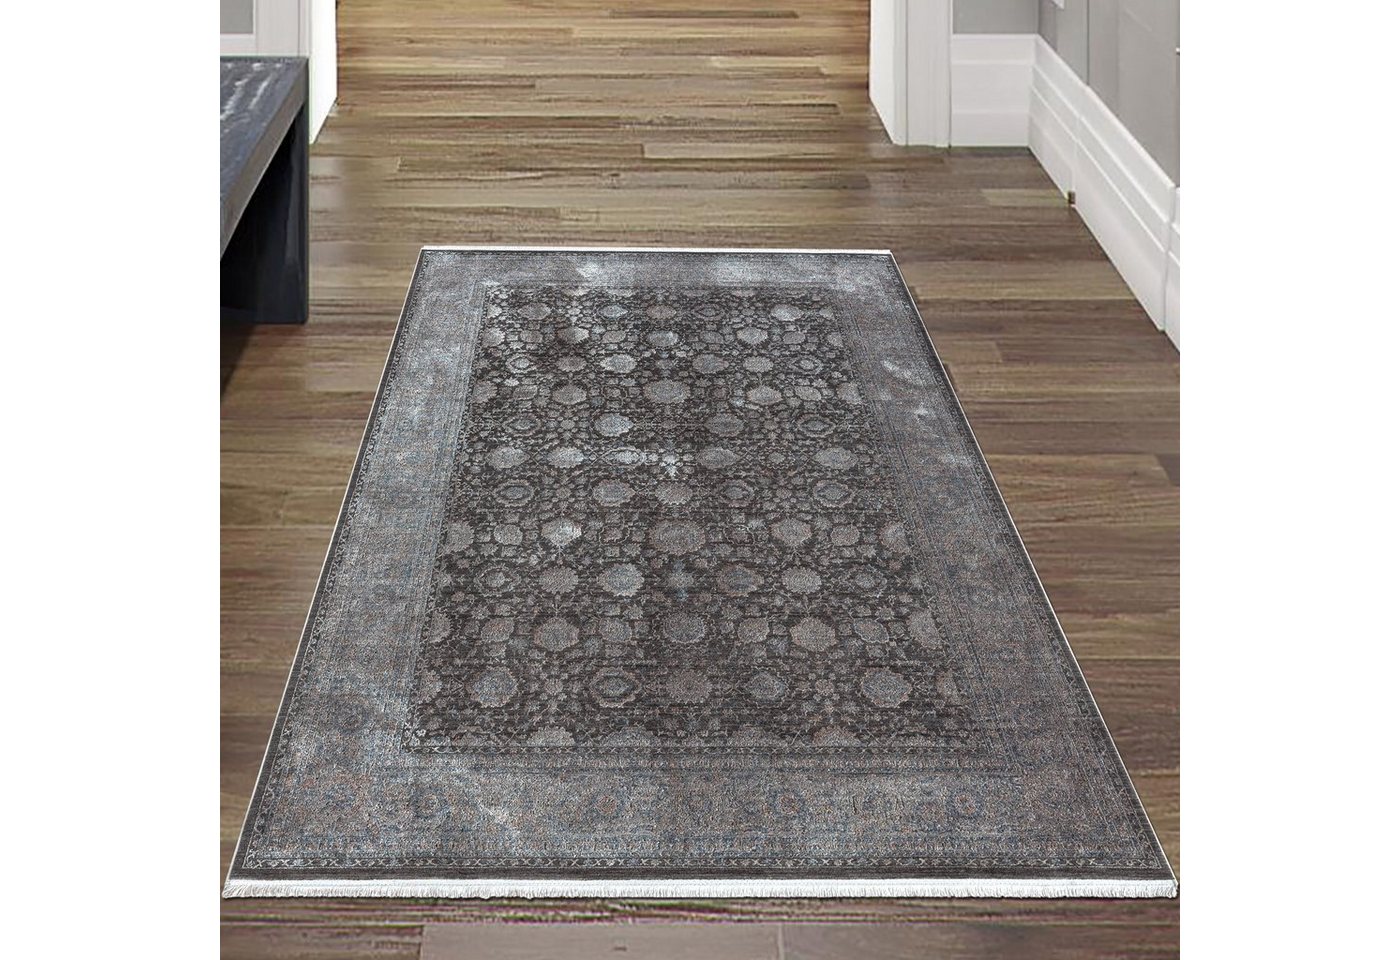 Teppich Orientalischer Teppich mit Blumen Ornamenten, in grau blau, Teppich-Traum, rechteckig, Fußbodenheizung-geeignet, Je nach Lichteinfall heller / dunkler (evtl. leicht glänzend) von Teppich-Traum